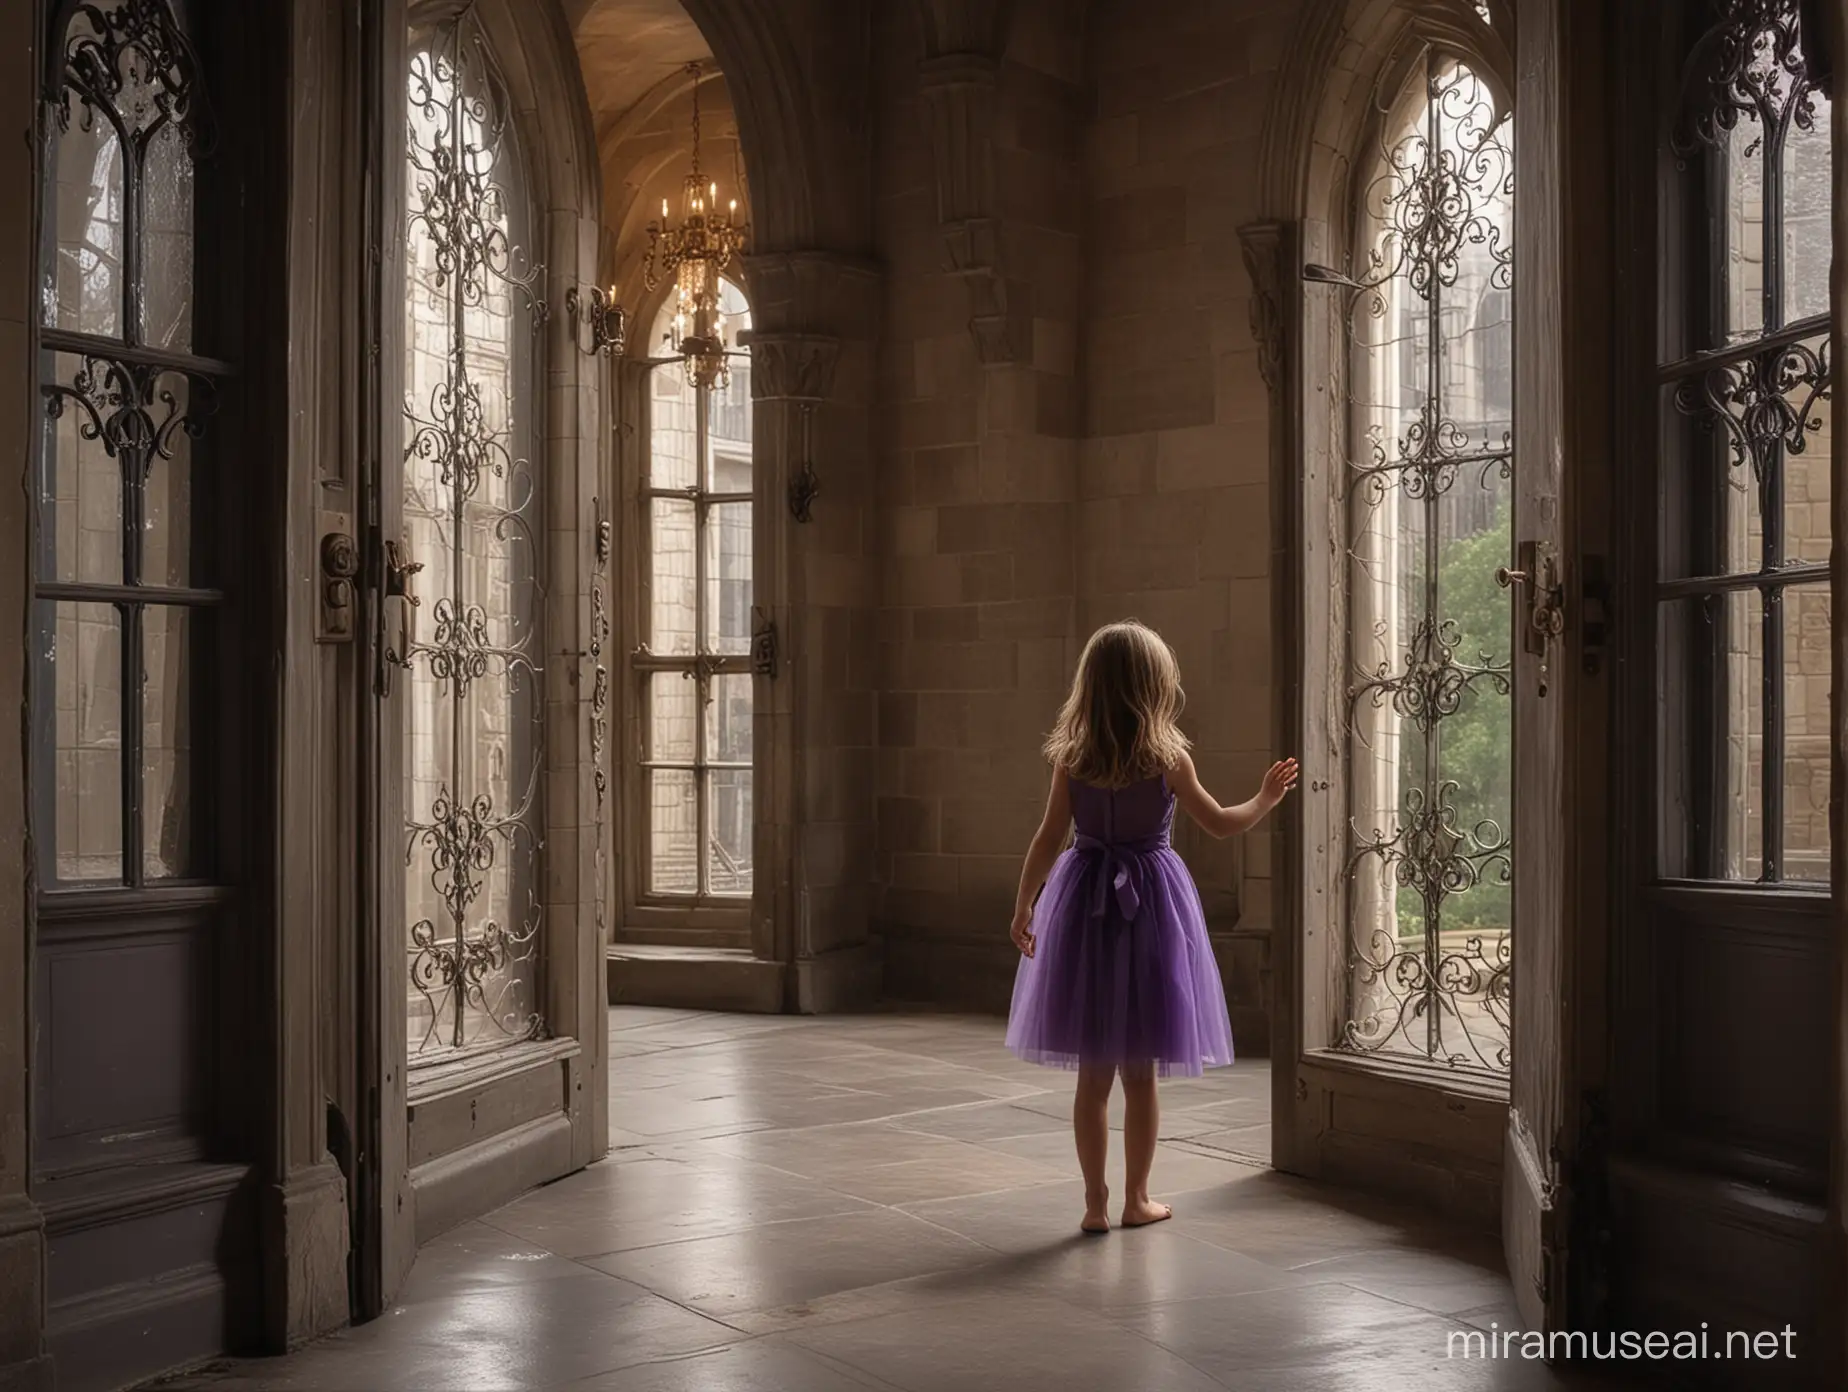 hautes et longues fenêtres type cathédrale dans un château magnifique ambiance sombre et sublime avec des chandeliers. Devant cette porte, une petite fille toque à la porte. Elle est de dos, a les cheveux chatains, une robe violette sans manches et pieds nus
